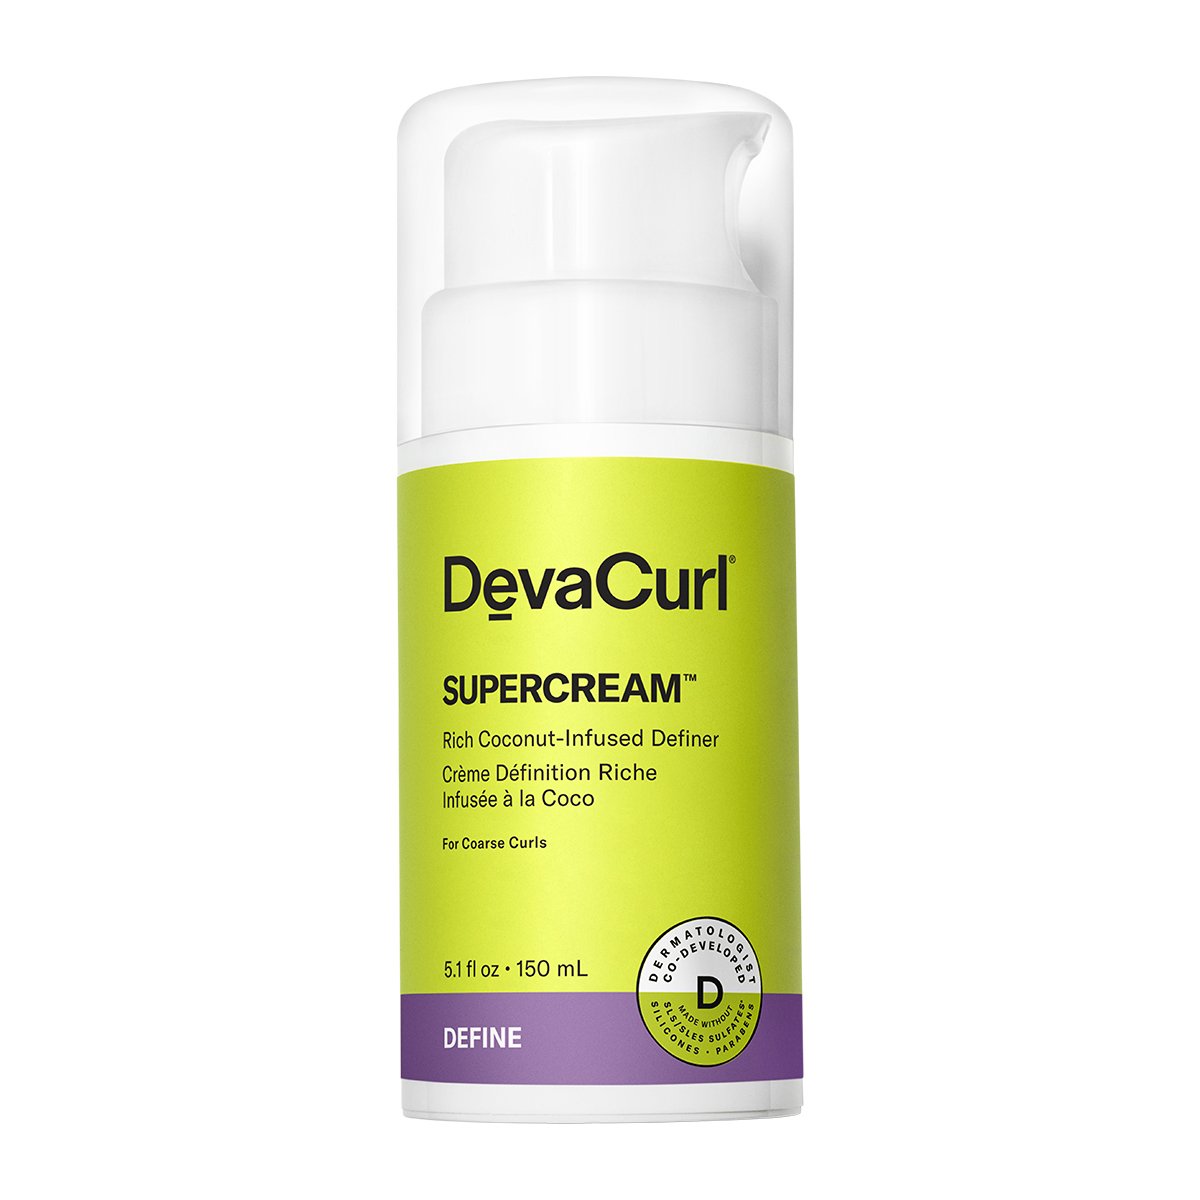 New! DevaCurl SuperCream - 5.1oz - by Deva Curl |ProCare Outlet|